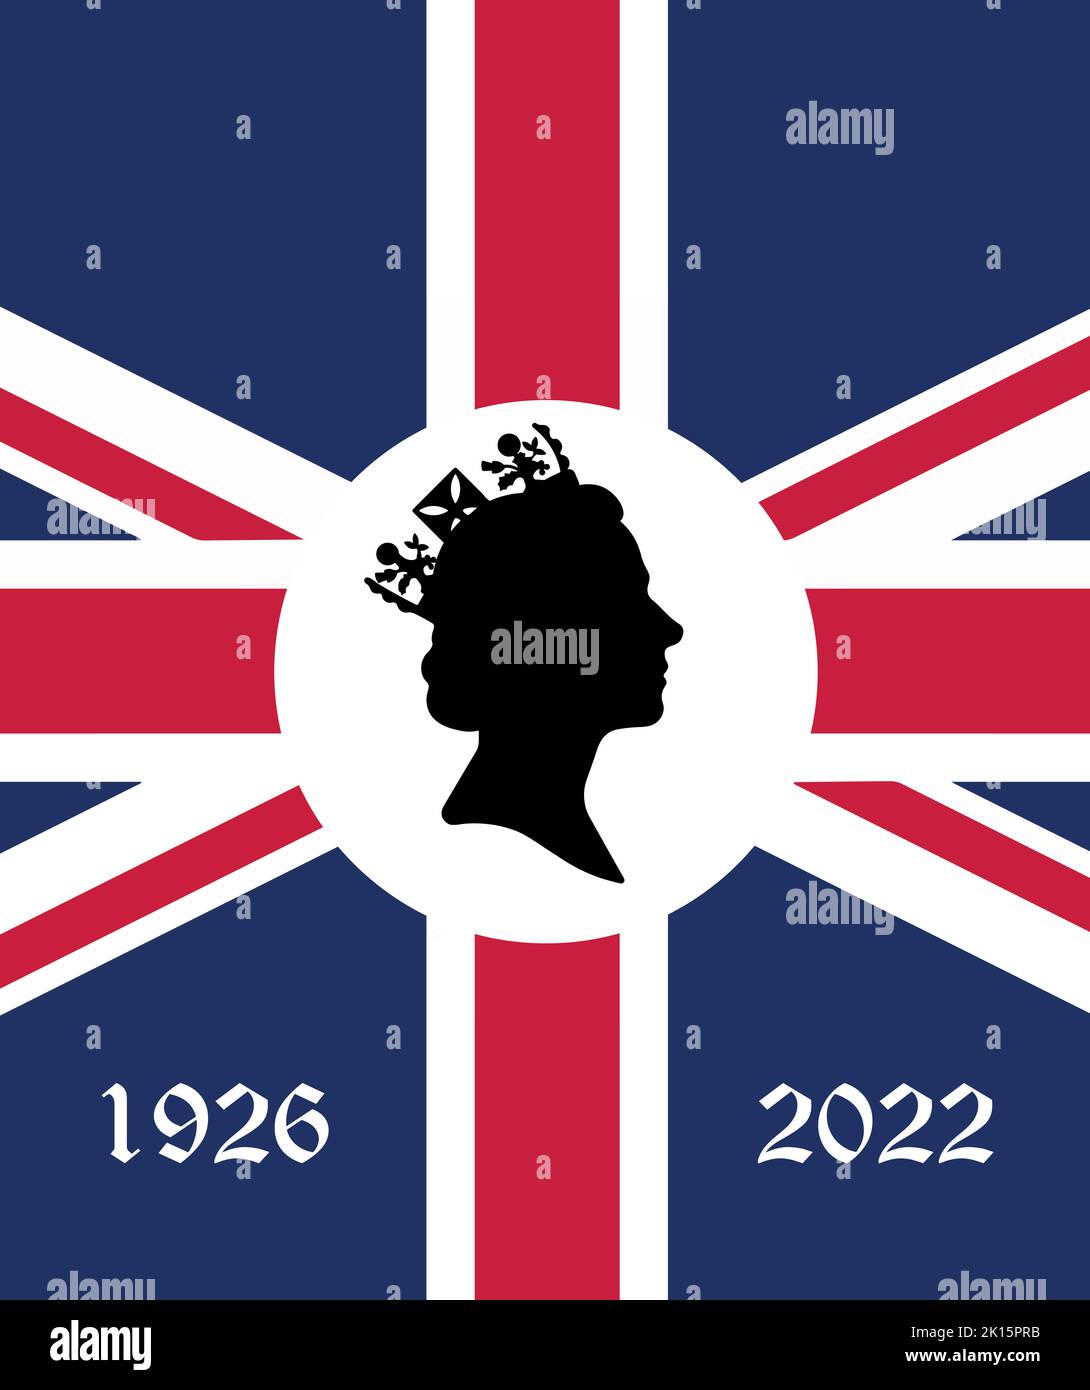 Londres, Londres, Angleterre 09.15.2022 bannière verticale mort Queen Elizabeth Side profil des jeunes dans la couronne sur le drapeau britannique obsèques décision 70 année 1926 t Banque D'Images